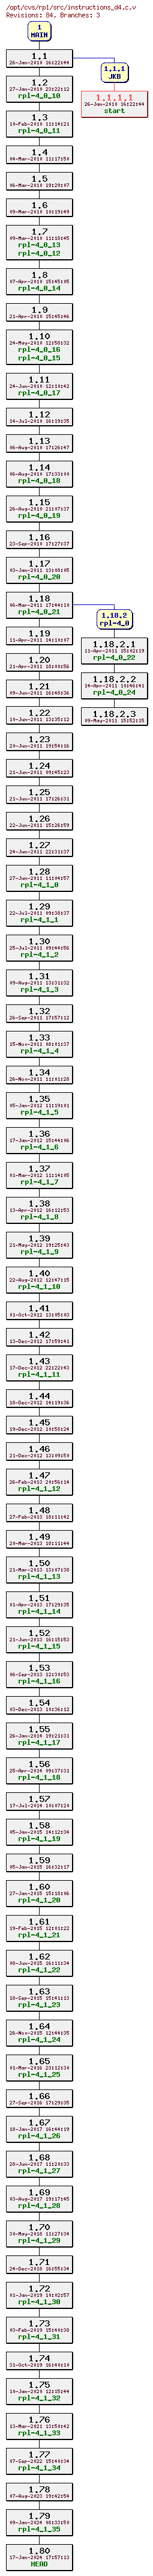 Revision graph of rpl/src/instructions_d4.c